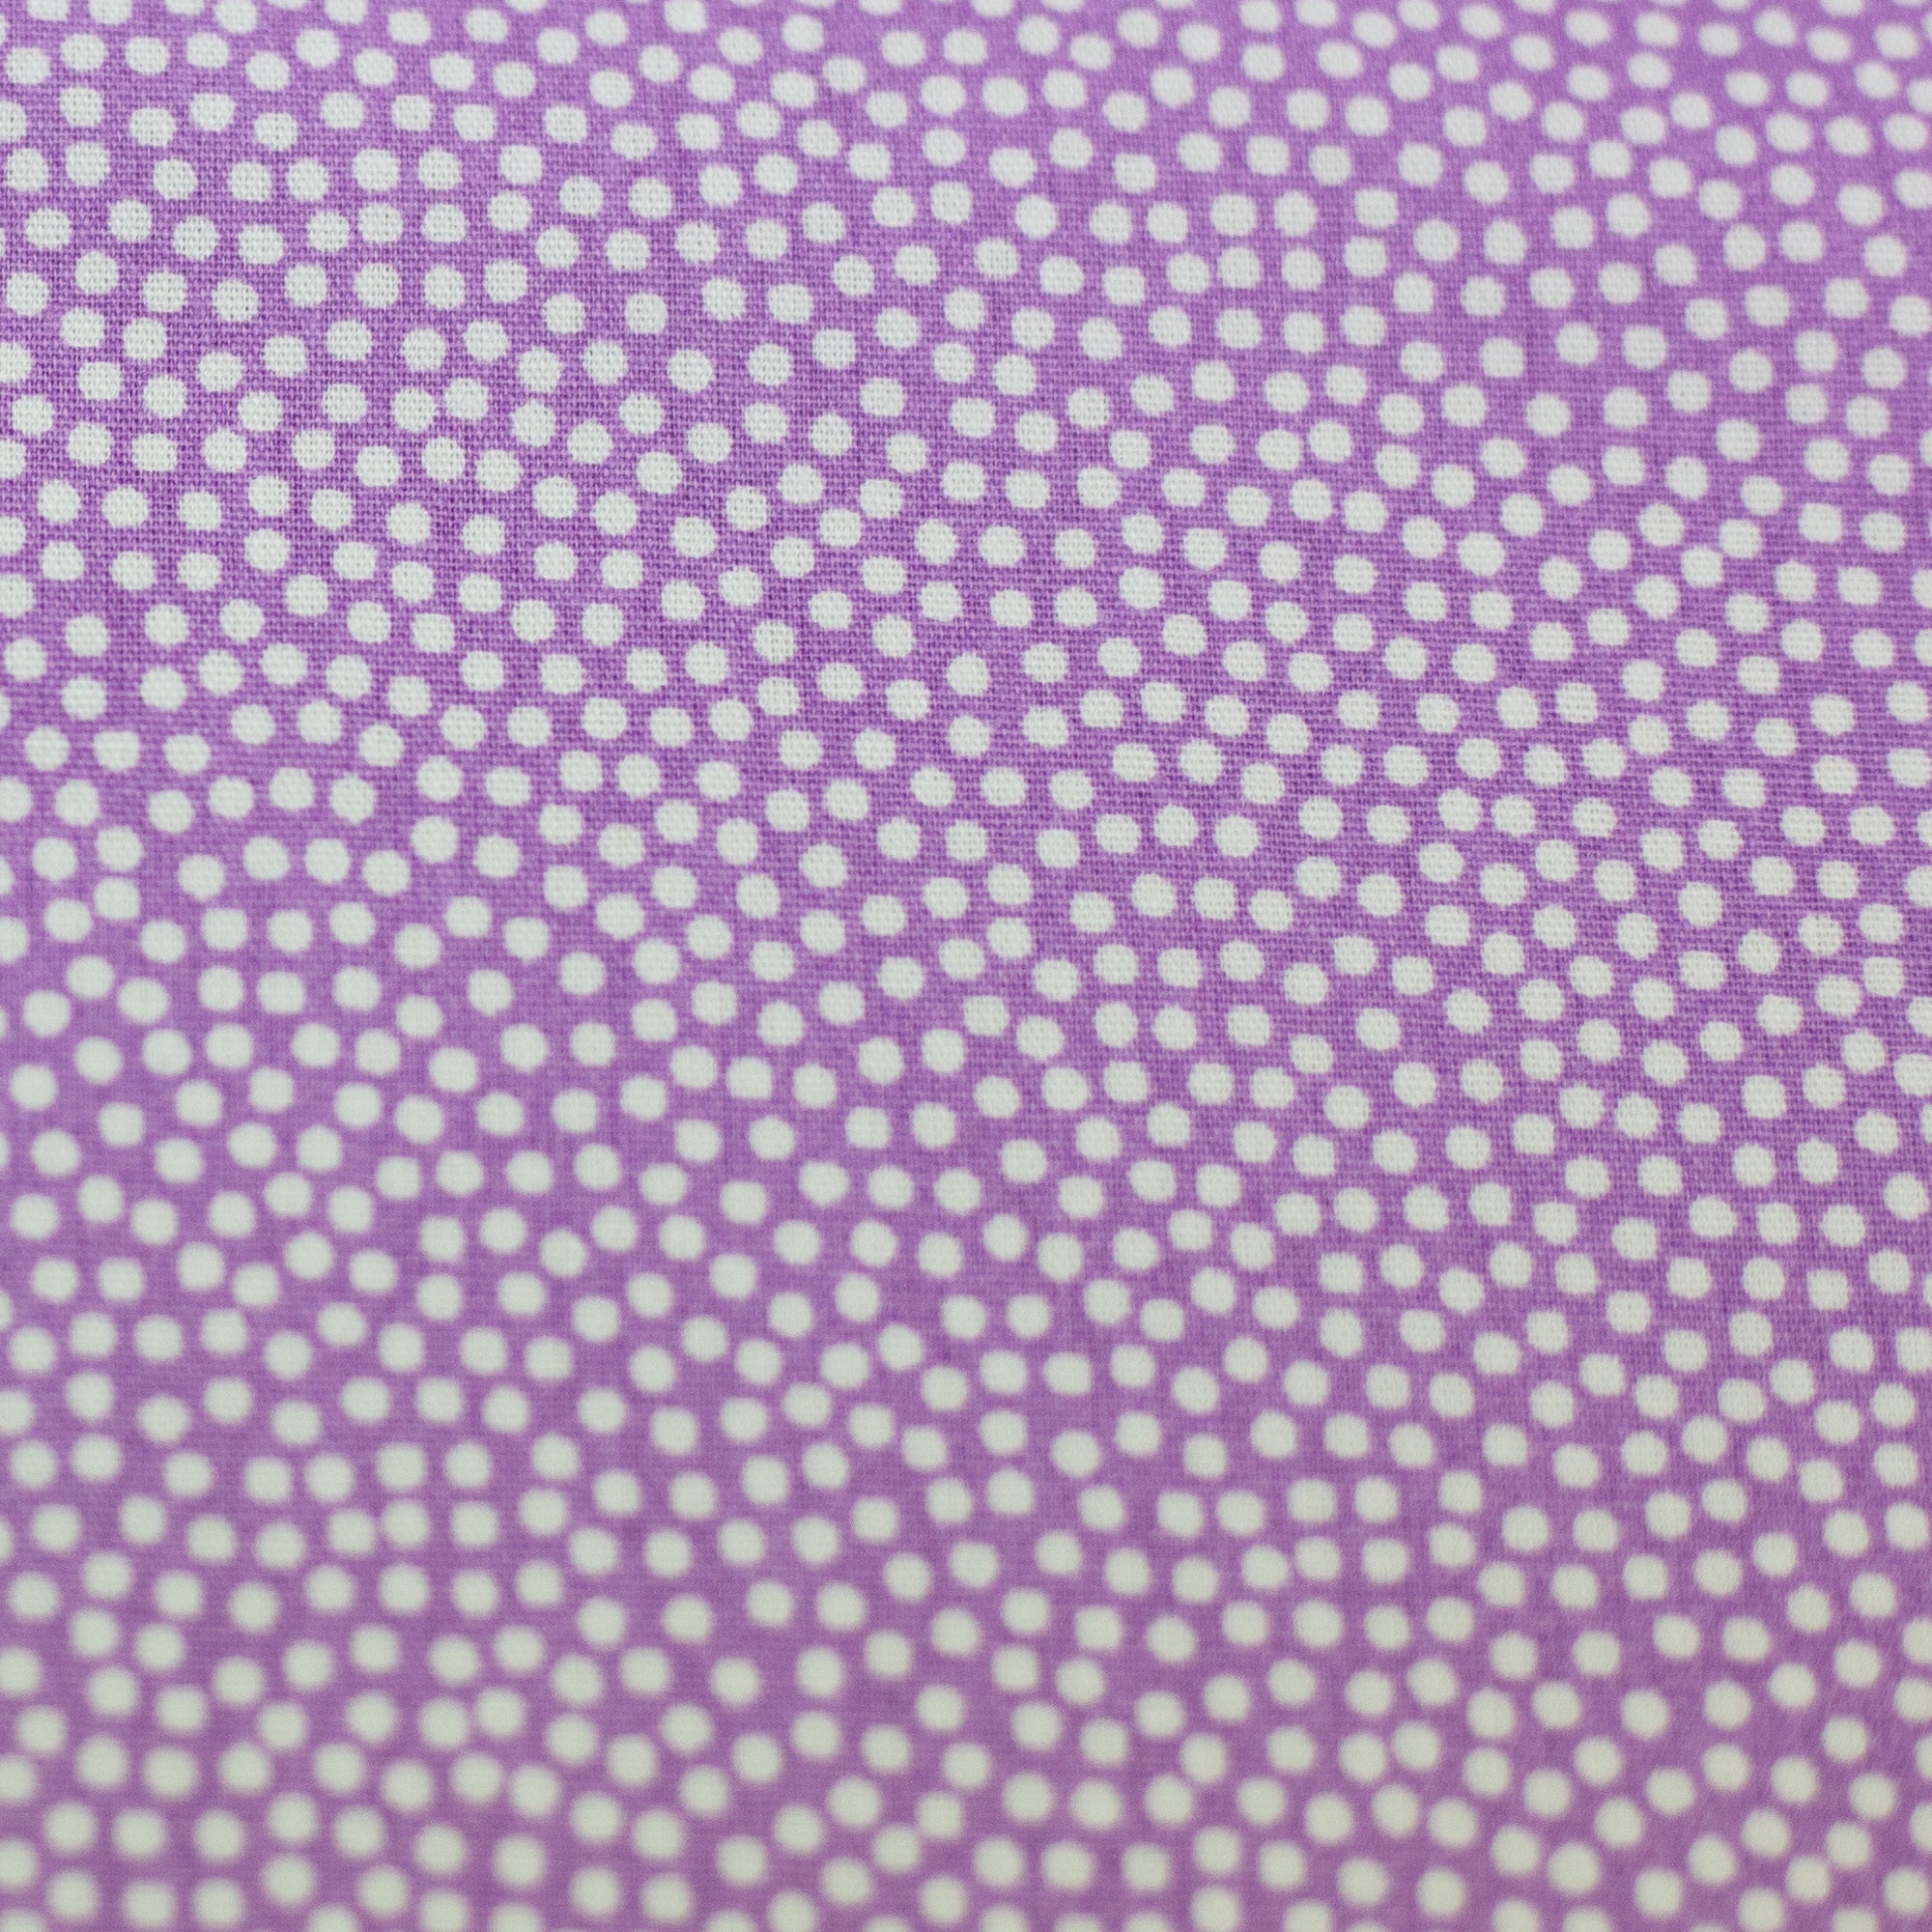 Baumwolle weiß auf lila gepunktet